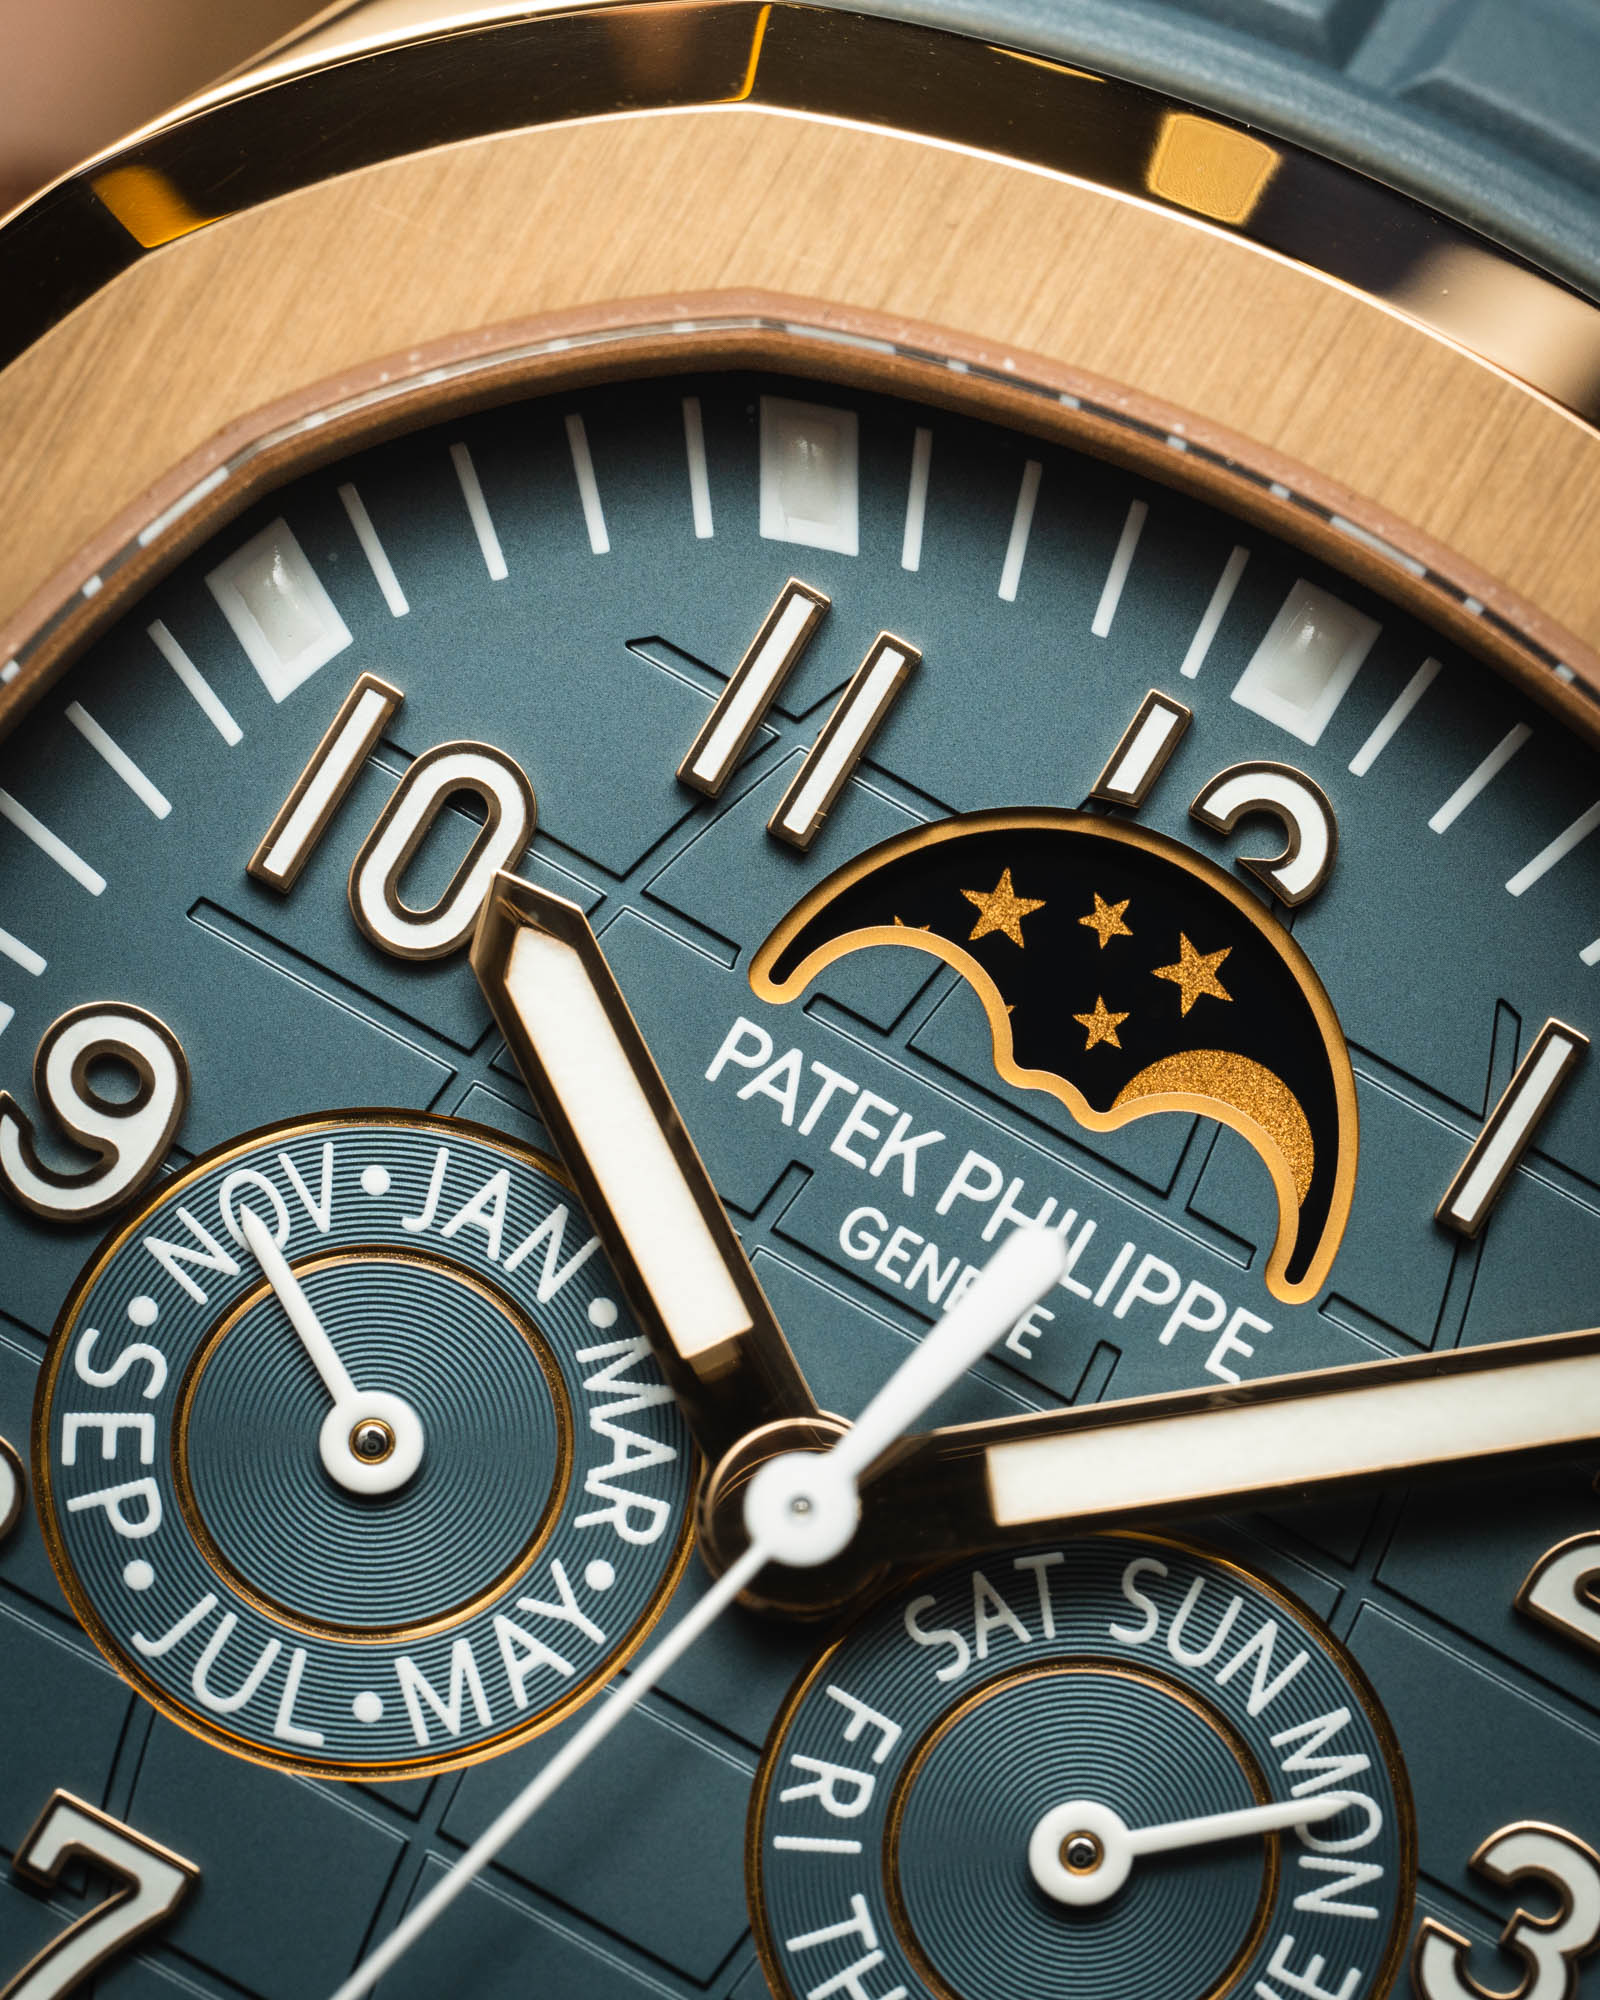 百达翡丽AQUANAUT系列万年历5261R-001腕表-专为所有人打造的中性奢华运动腕表